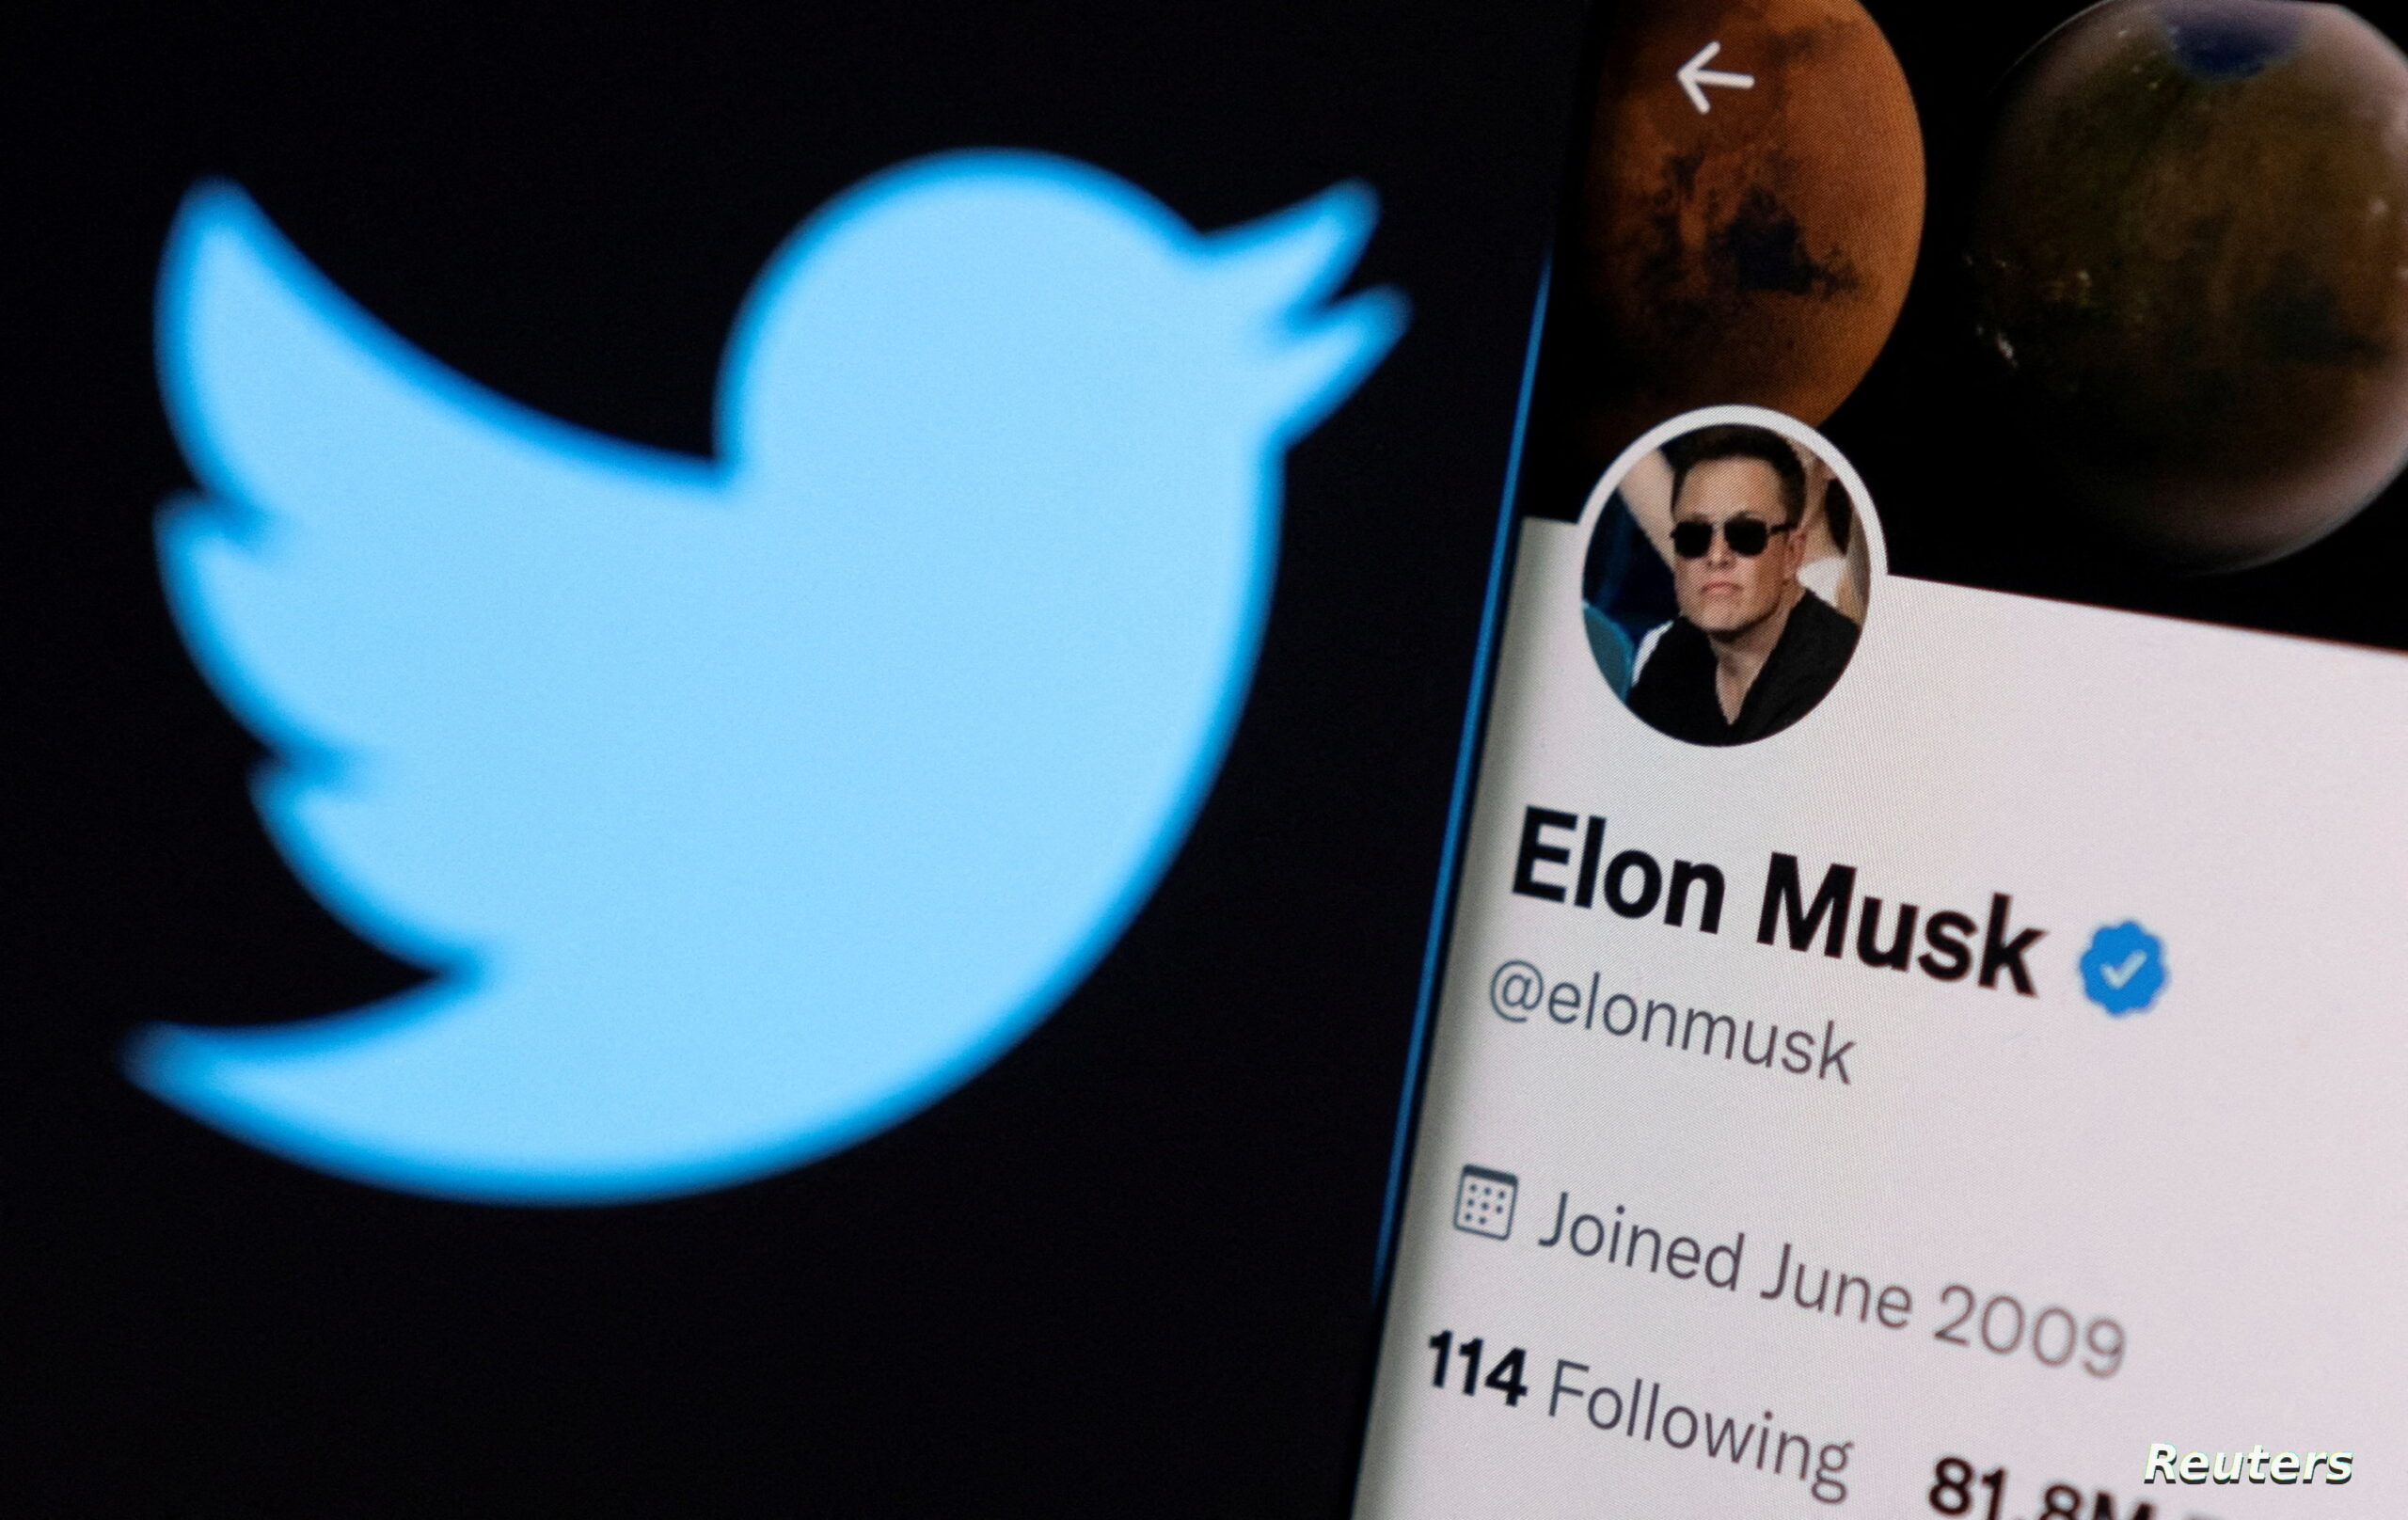 بـ44 مليار $.. مجلس إدارة "تويتر" يوصي بالإجماع بالموافقة على تملك ايلون ماسك للشركة